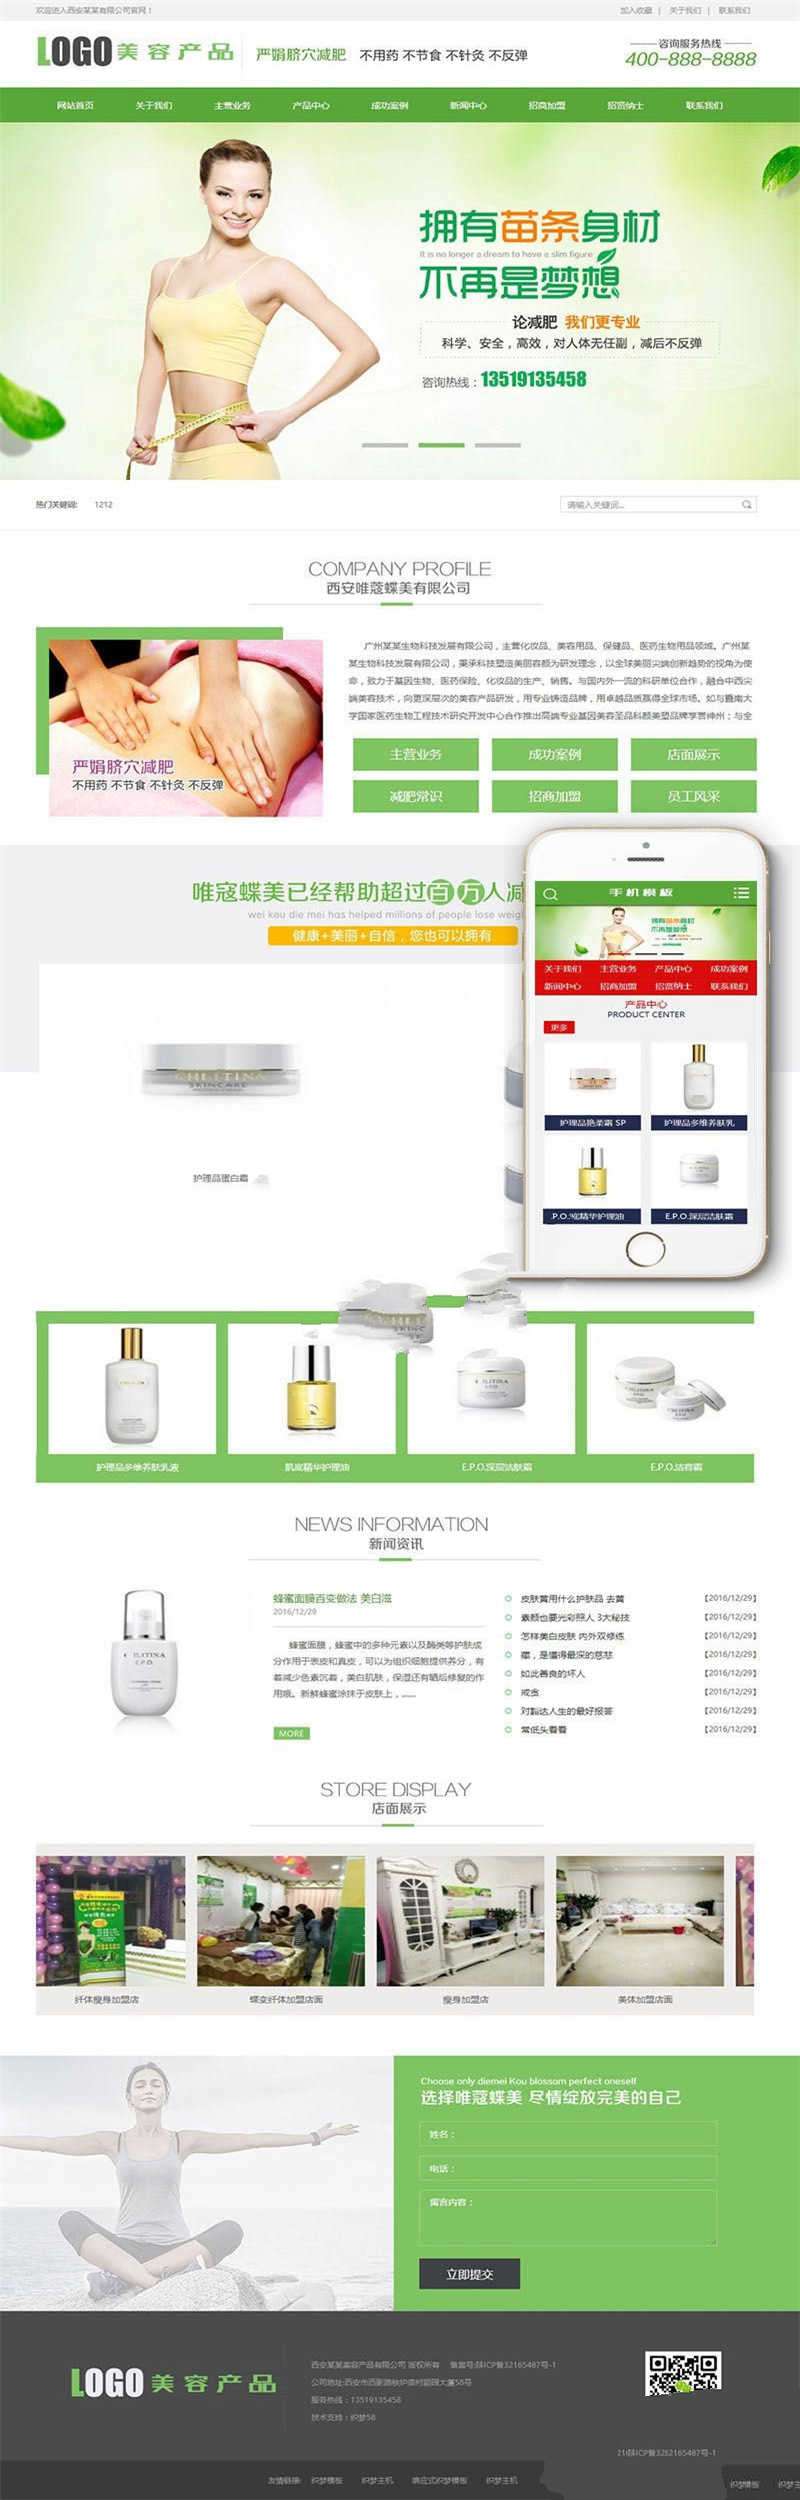 [企业源码]织梦dedecms美容美白产品企业网站模板(带手机移动端)插图